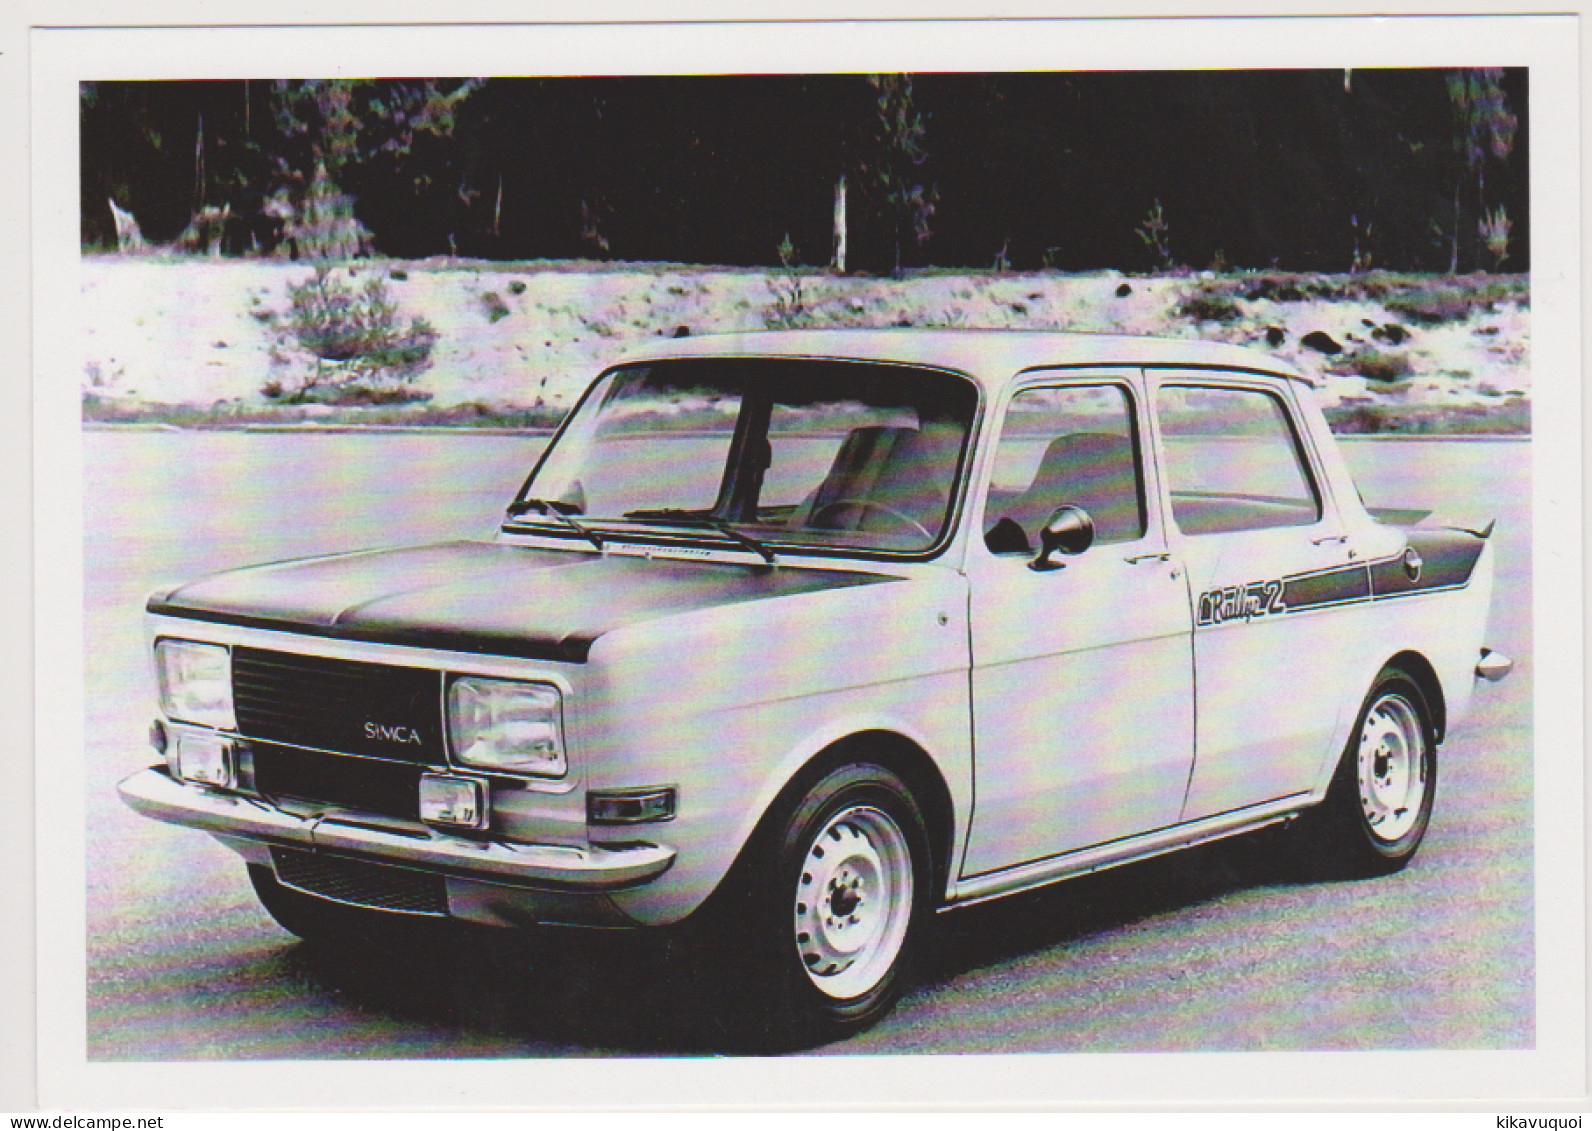 SIMCA 1000 RALLYE 2 DE 1972 A 1977 - CARTE POSTALE 10X15 CM NEUF - Turismo